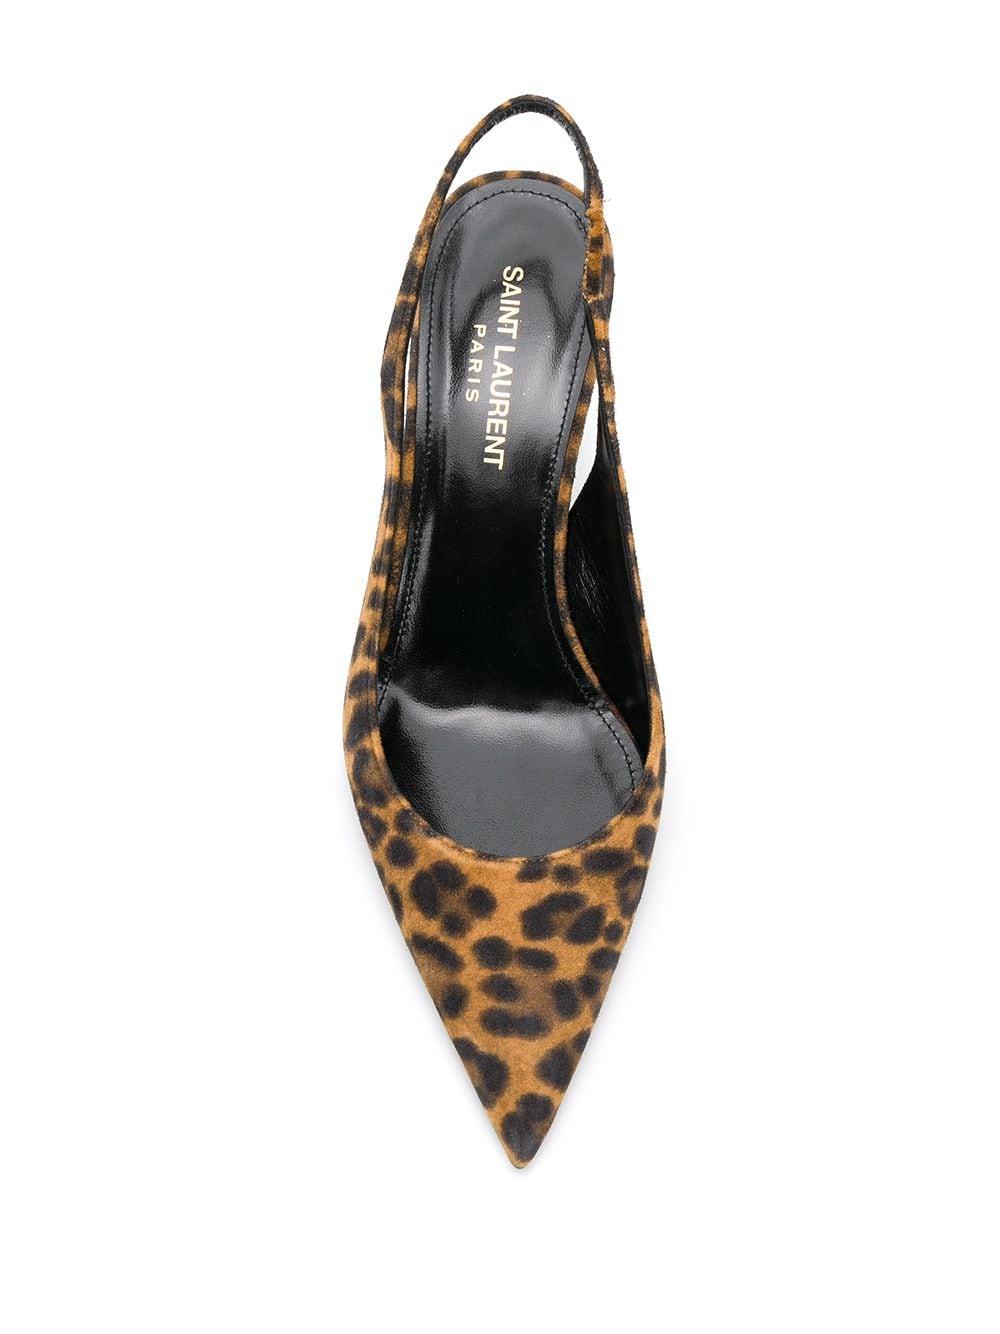 Yves Saint Laurent T-hakpumps \u201eTribute Sandals Leopard Print\u201c Schoenen Pumps T-hakpumps 